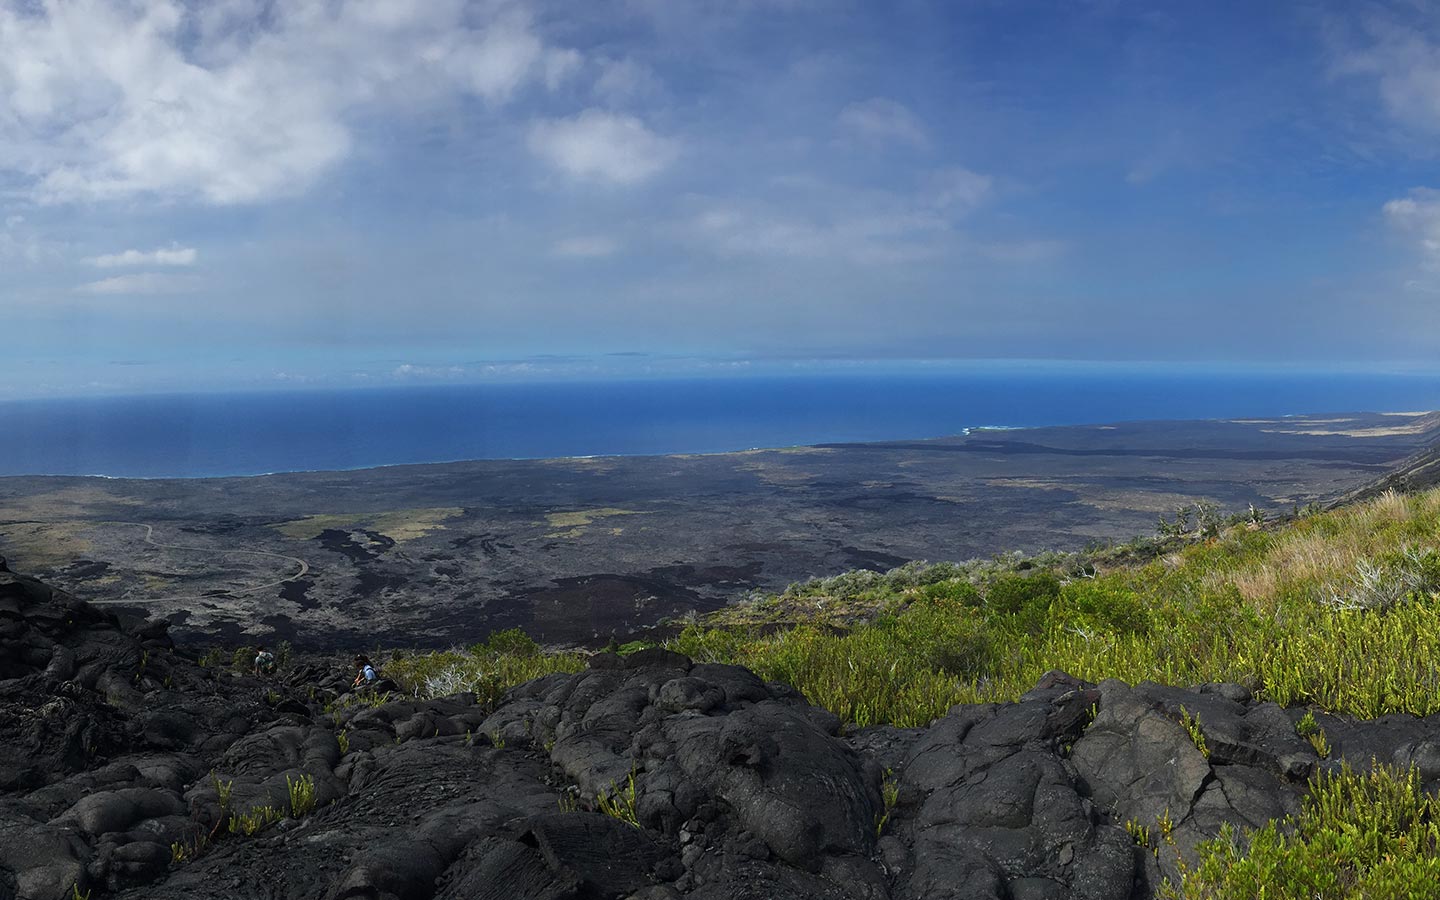 East Kilauea Rift Zone Sea View